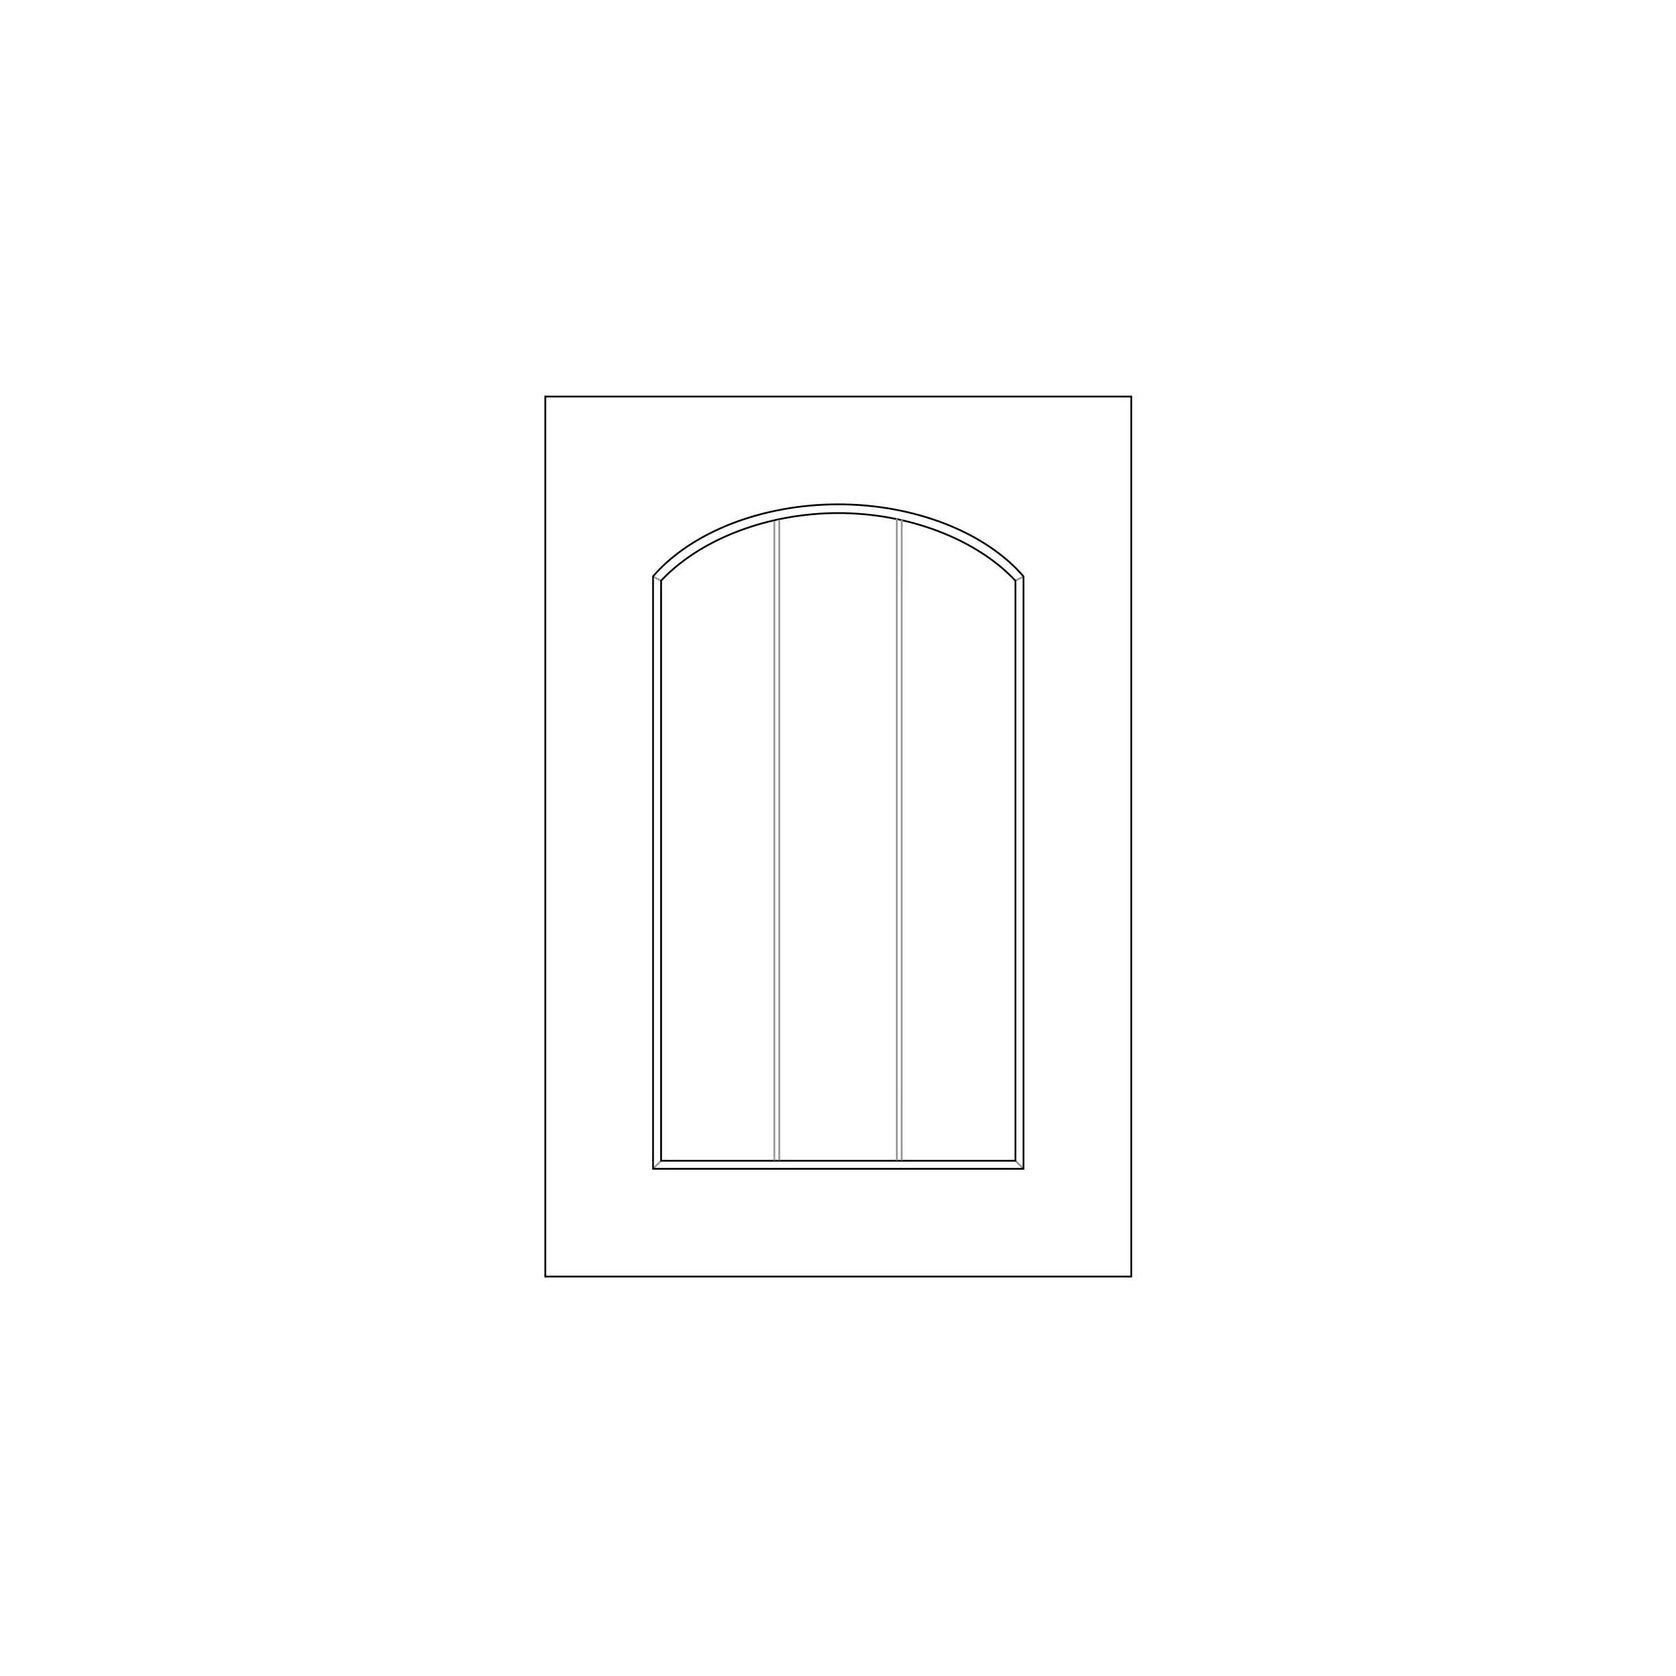 Durostyle Platinum Series - Derwent Arch Kitchen Cabinet Doors gallery detail image